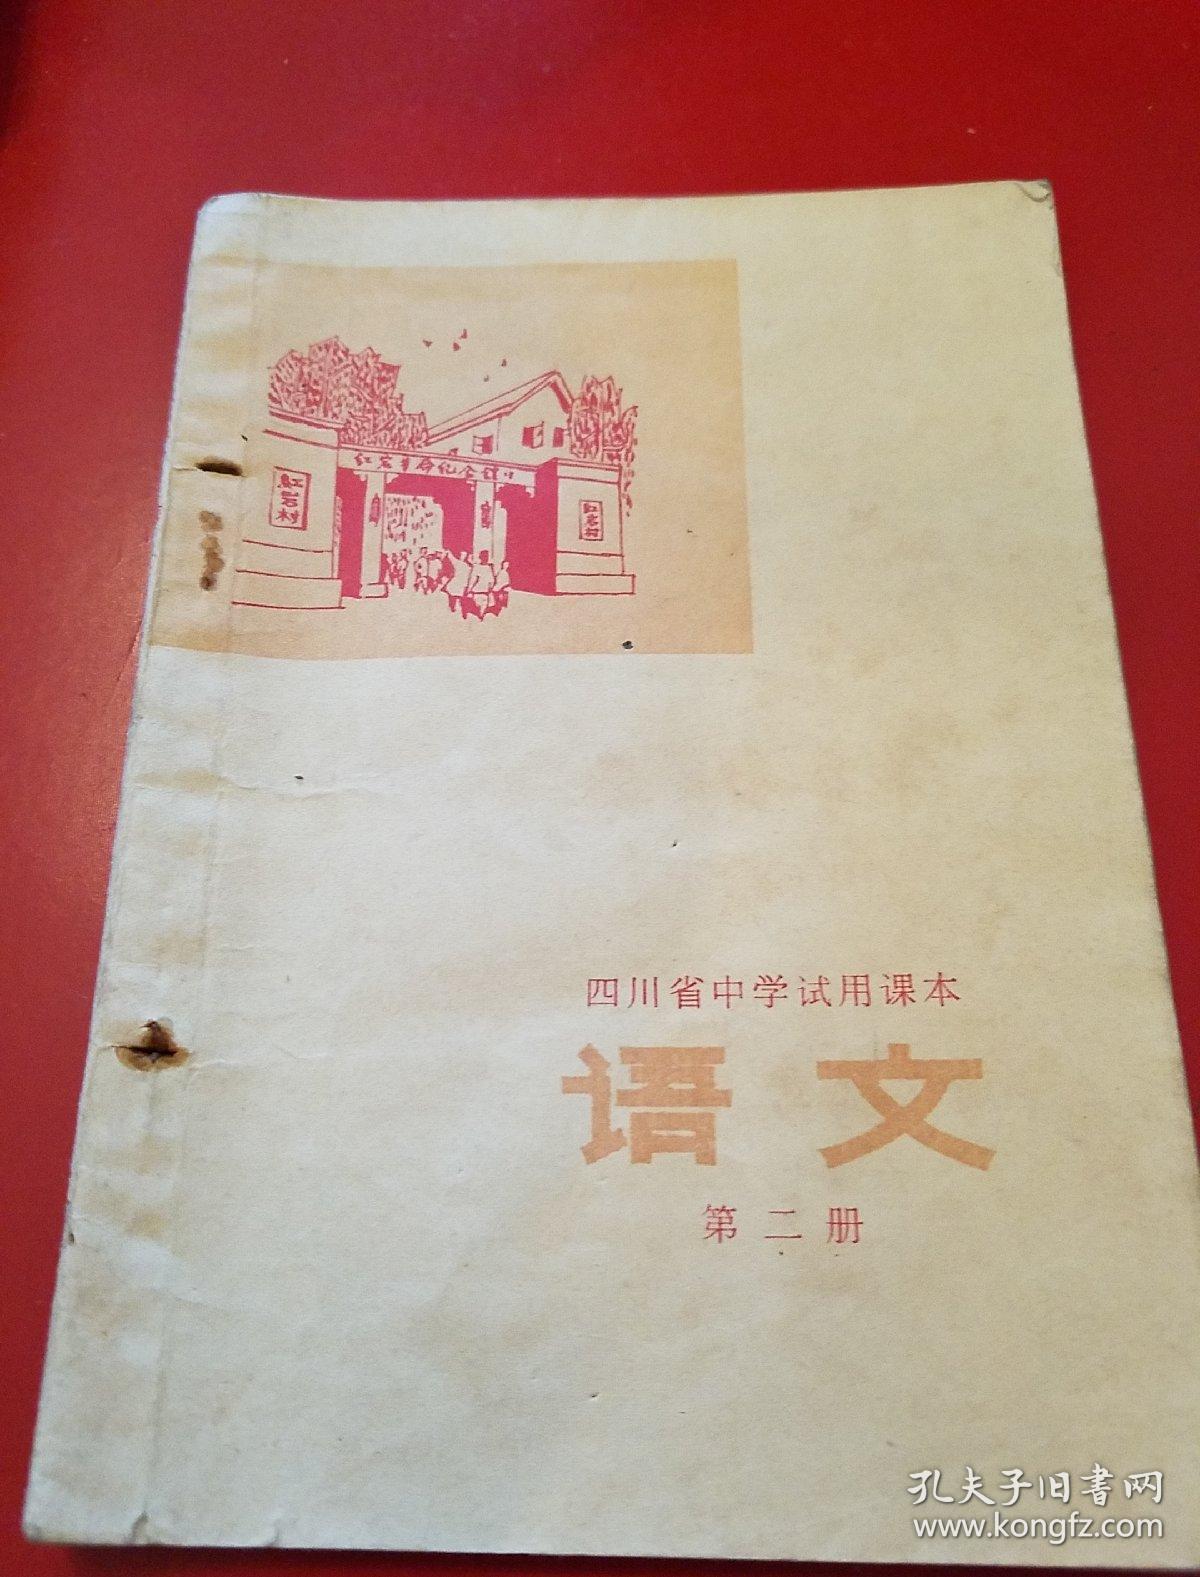 1977年四川省中小学试用教材
《语文》第二册